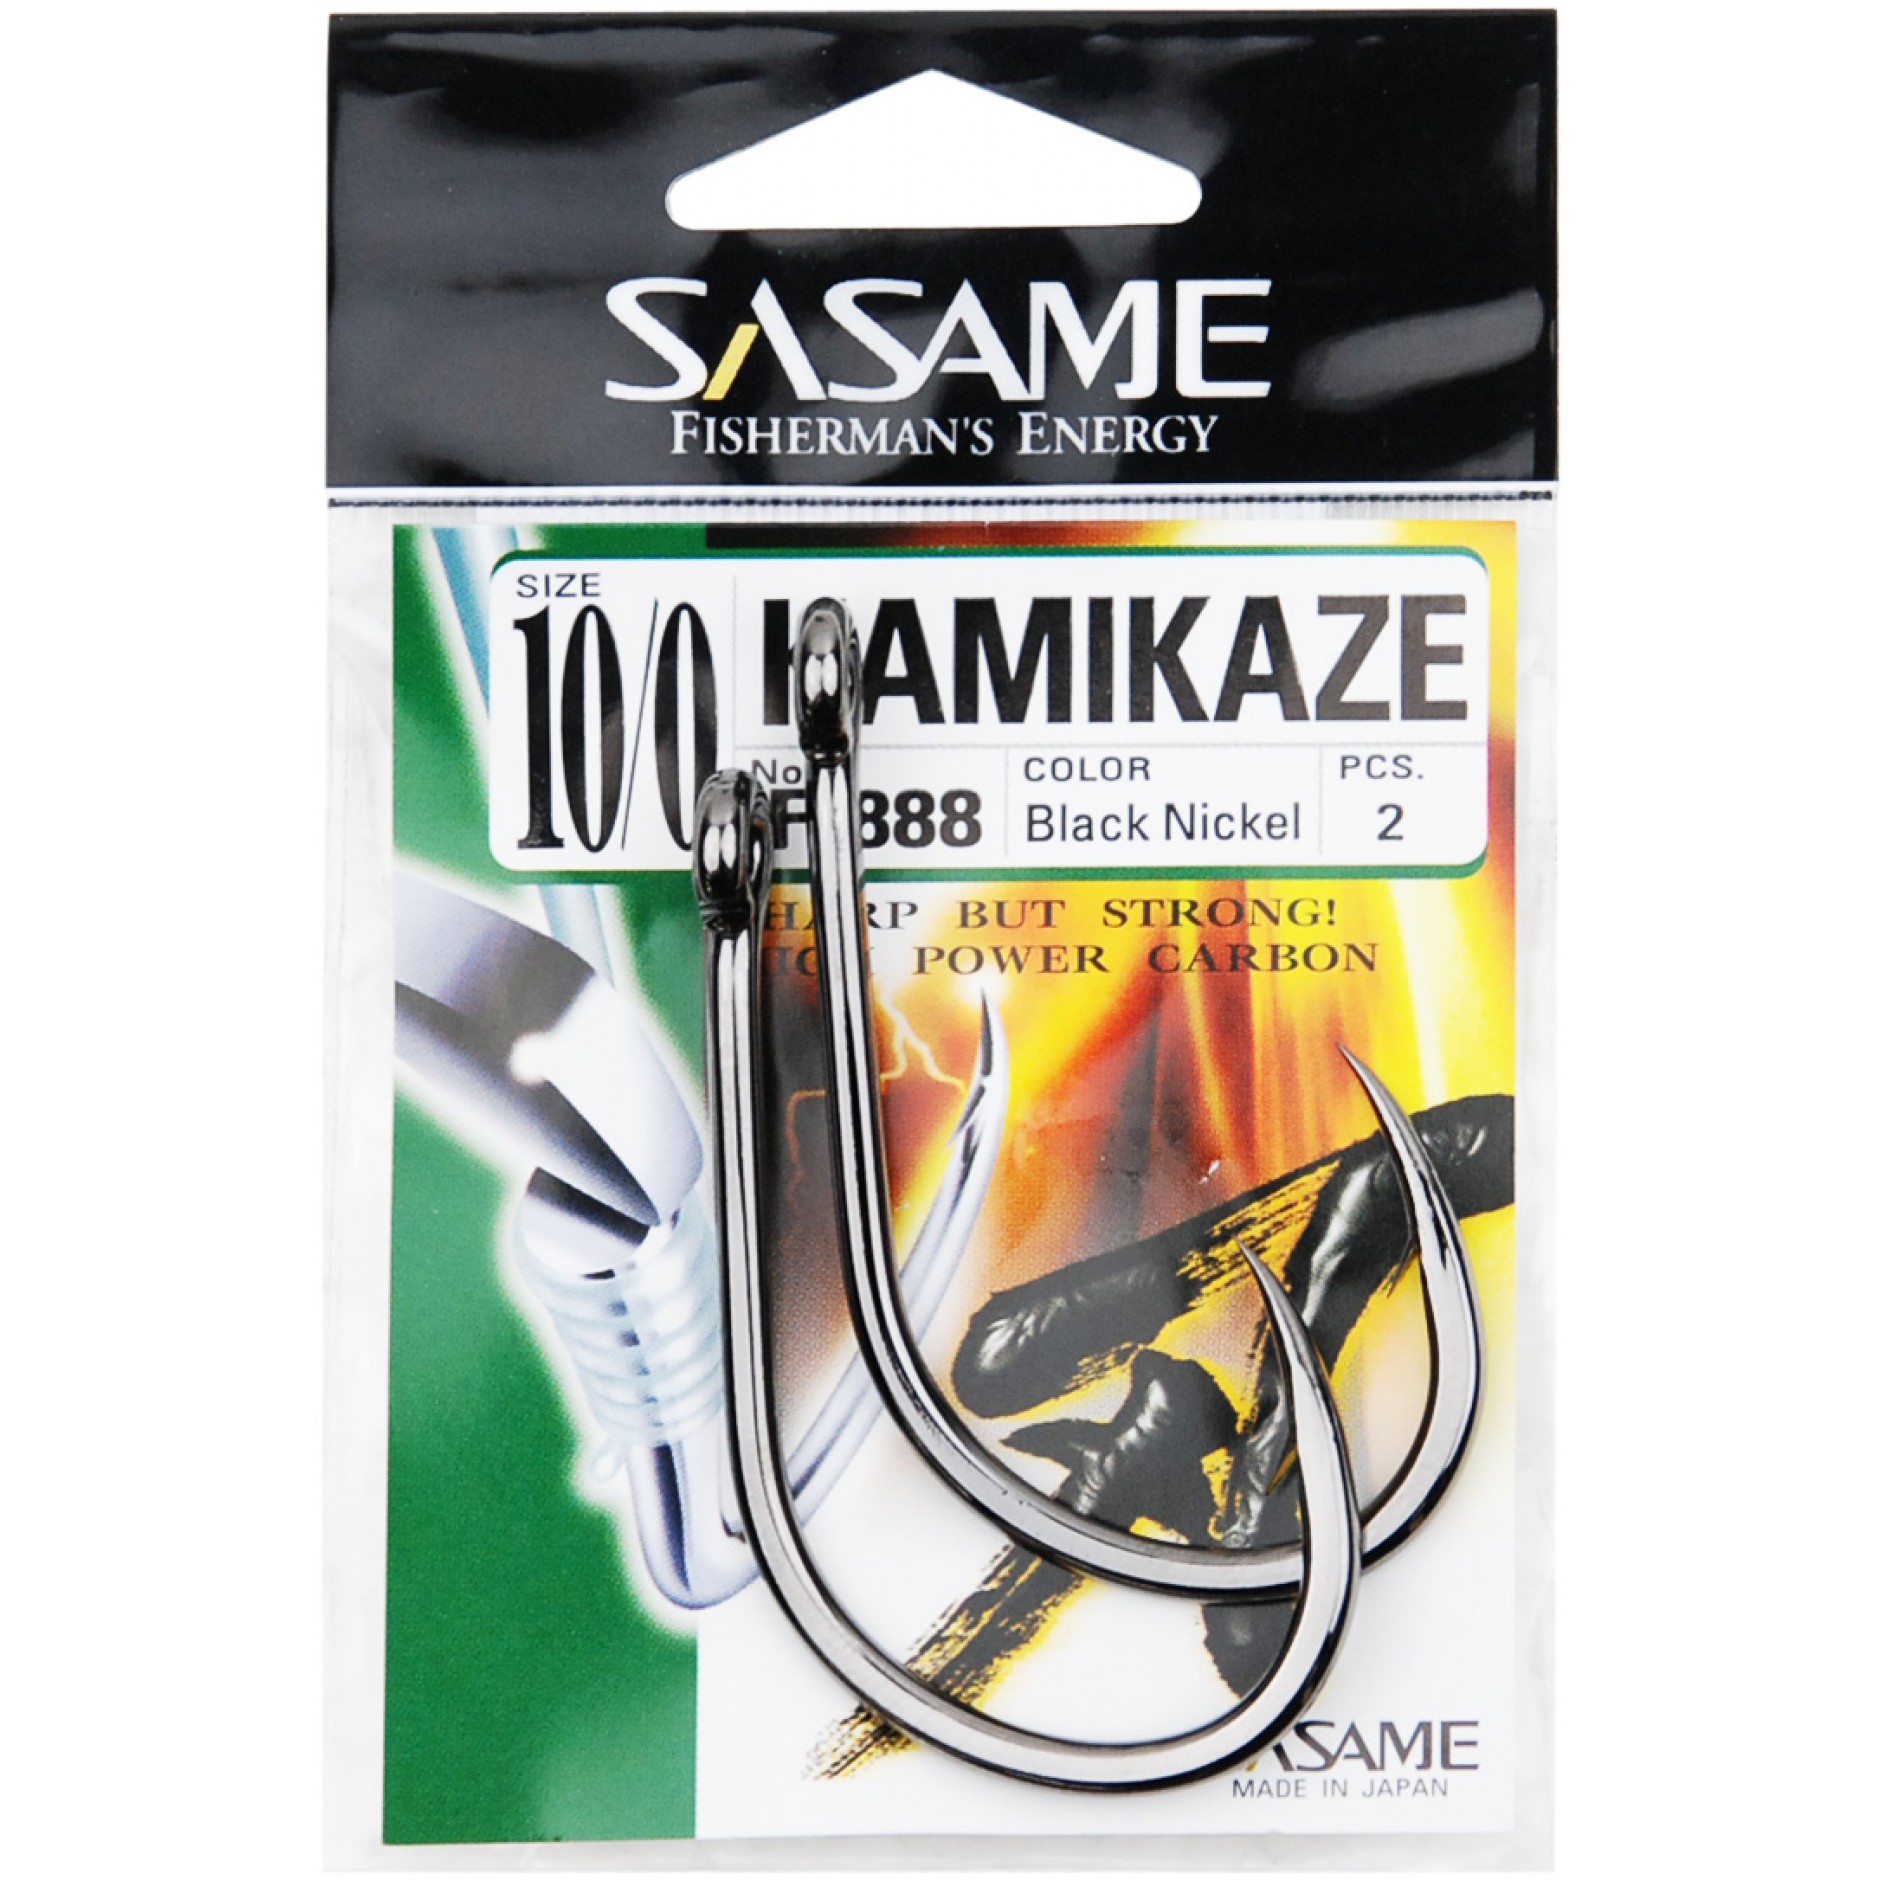 SASAME KAMIKAZE - Monster-Bite.com